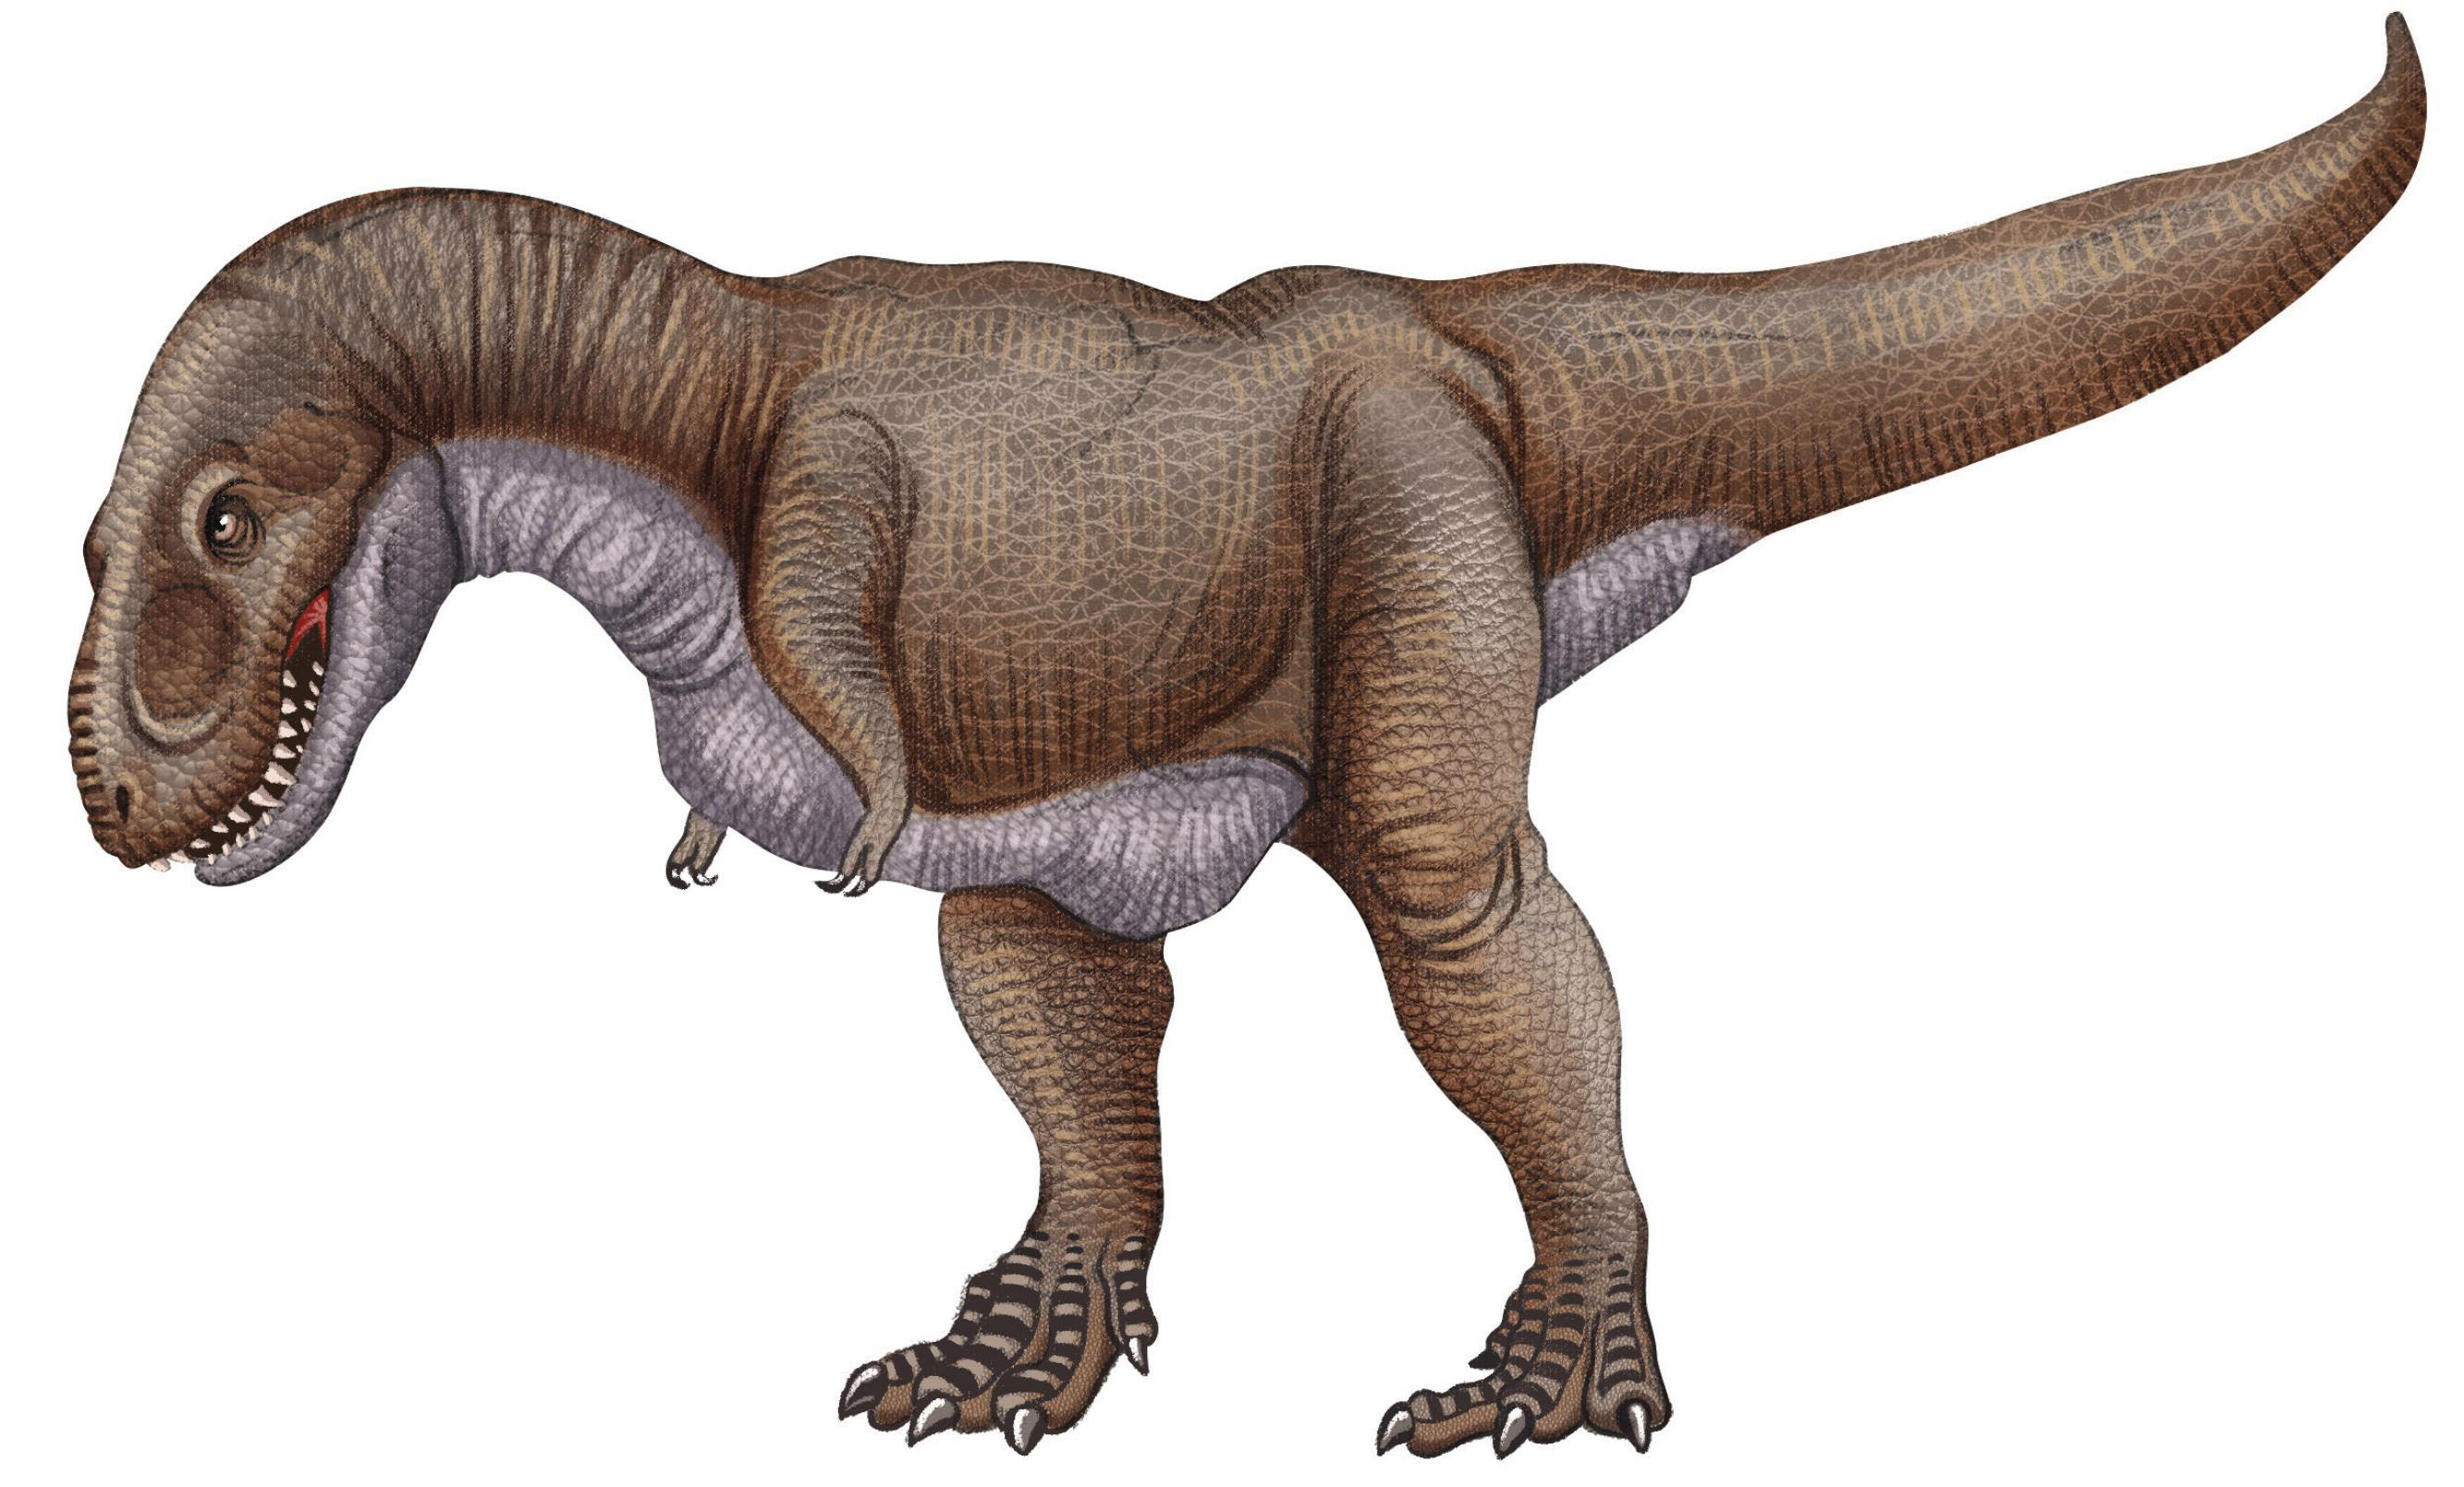 目前发现生存时间最早的恐龙有三种,分别是:丁字龙,埃雷拉龙和始盗龙